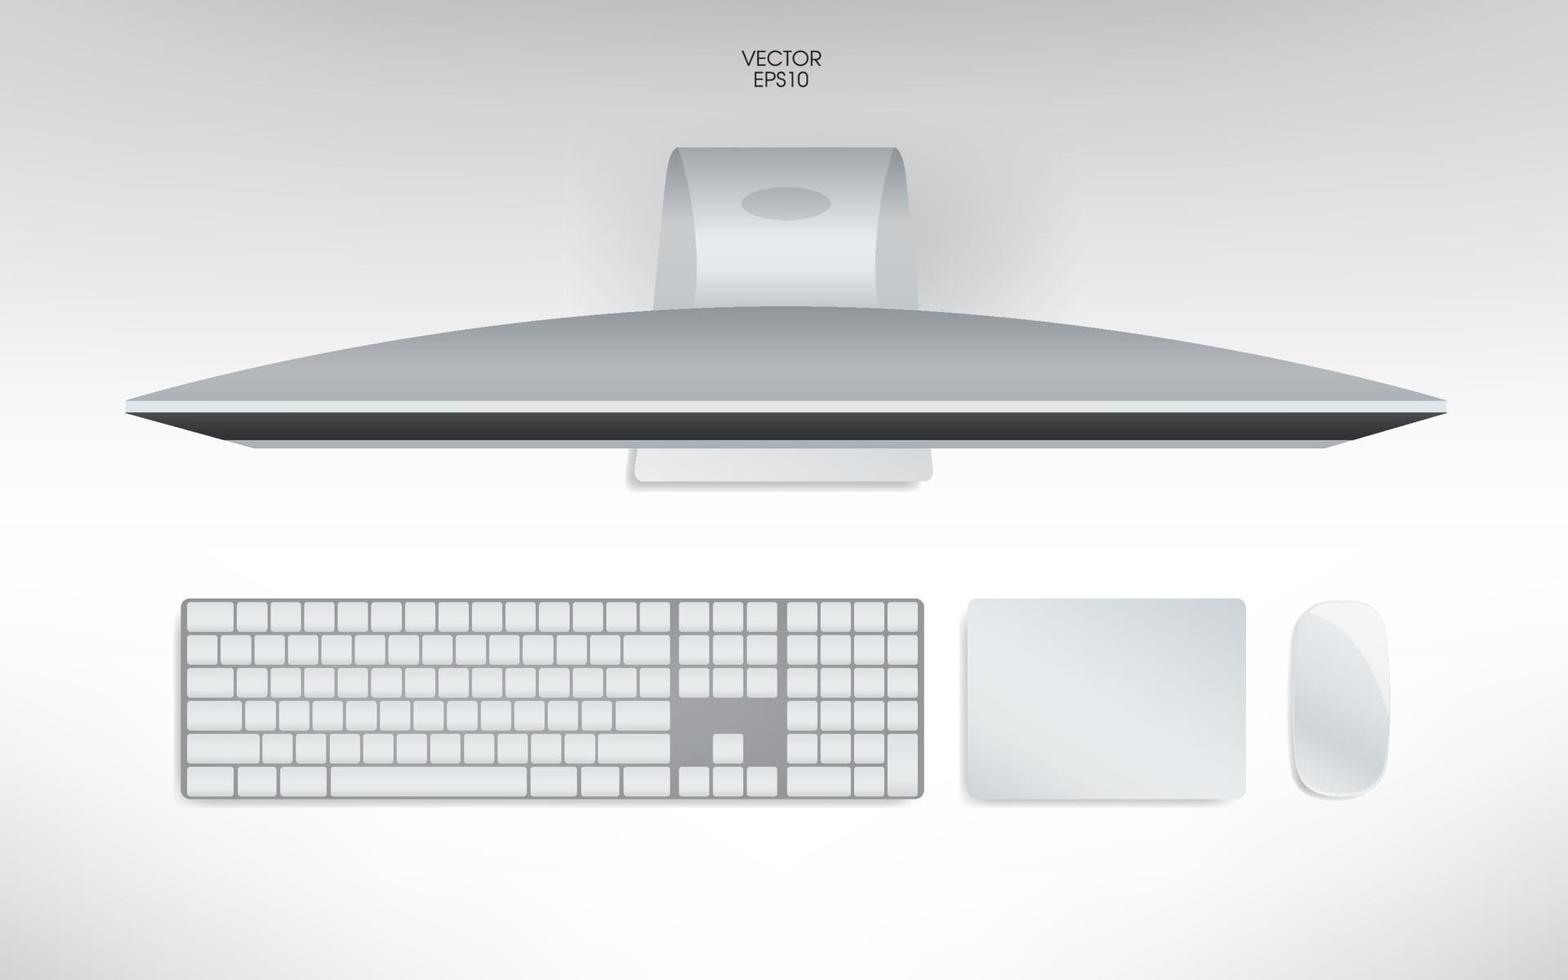 vista superior do computador, teclado, mouse e trackpad. mock up template para adicionar seu conteúdo ou conceito de negócio digital. vetor. vetor